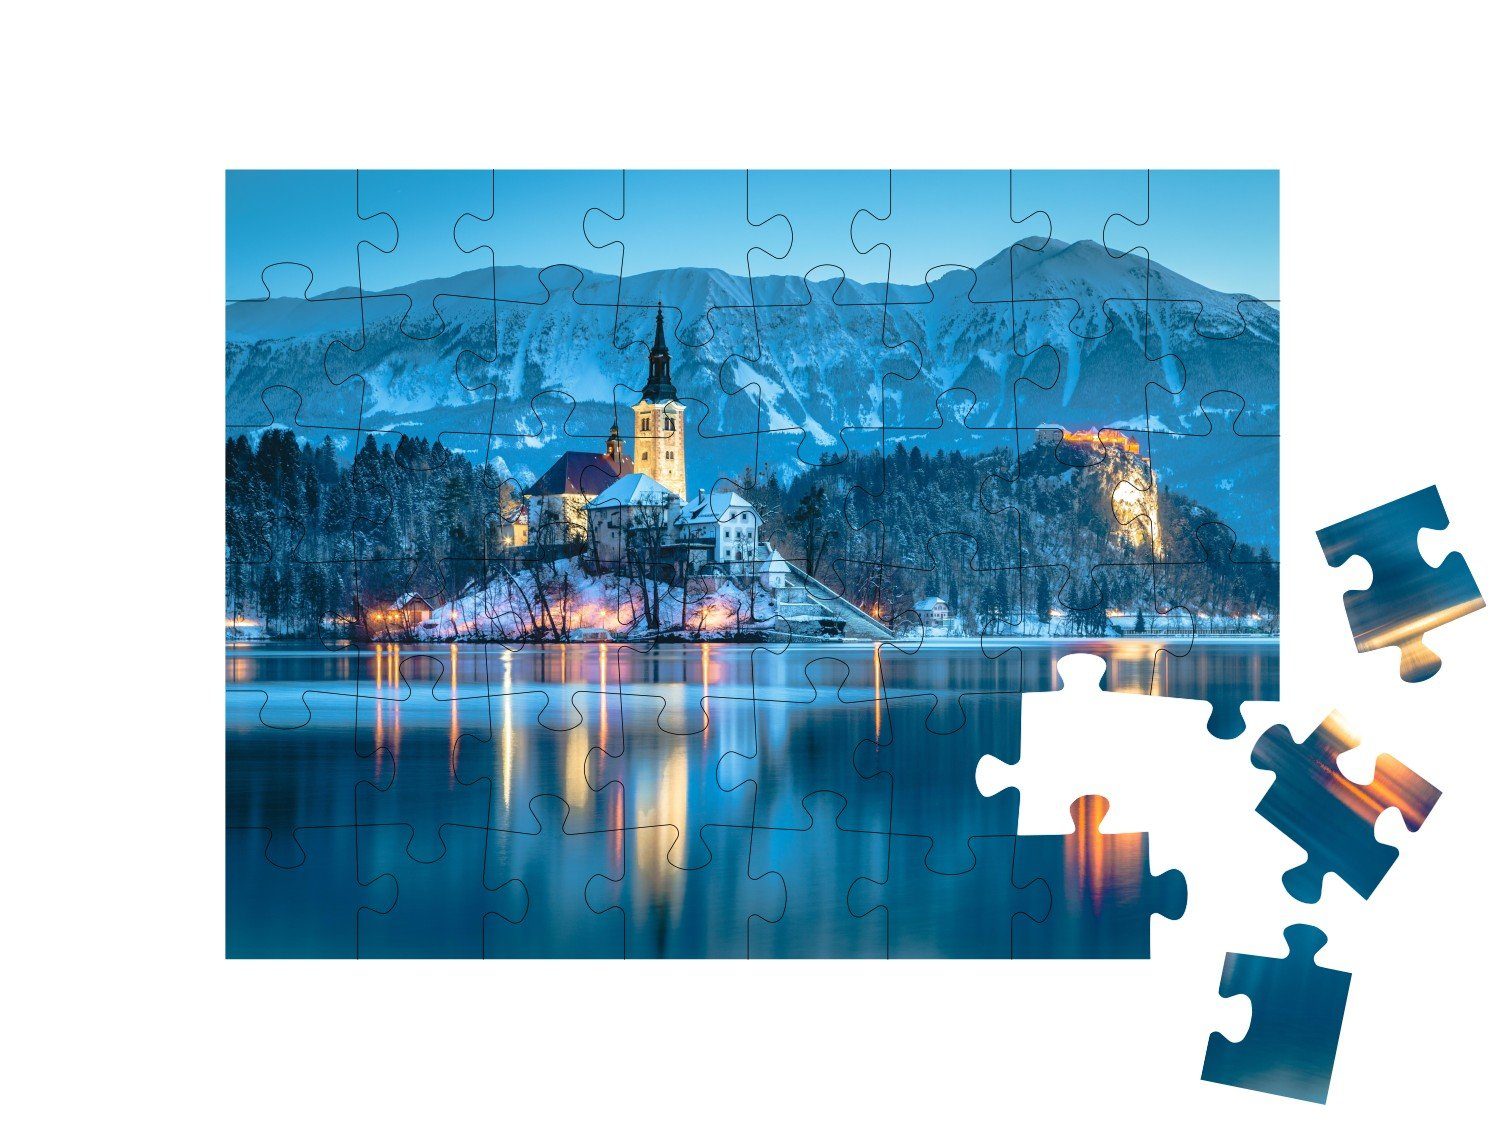 den Puzzleteile, puzzleYOU-Kollektionen puzzleYOU 48 Bleder Burg Blick auf See Bleder Puzzle in mit Slowenien, See